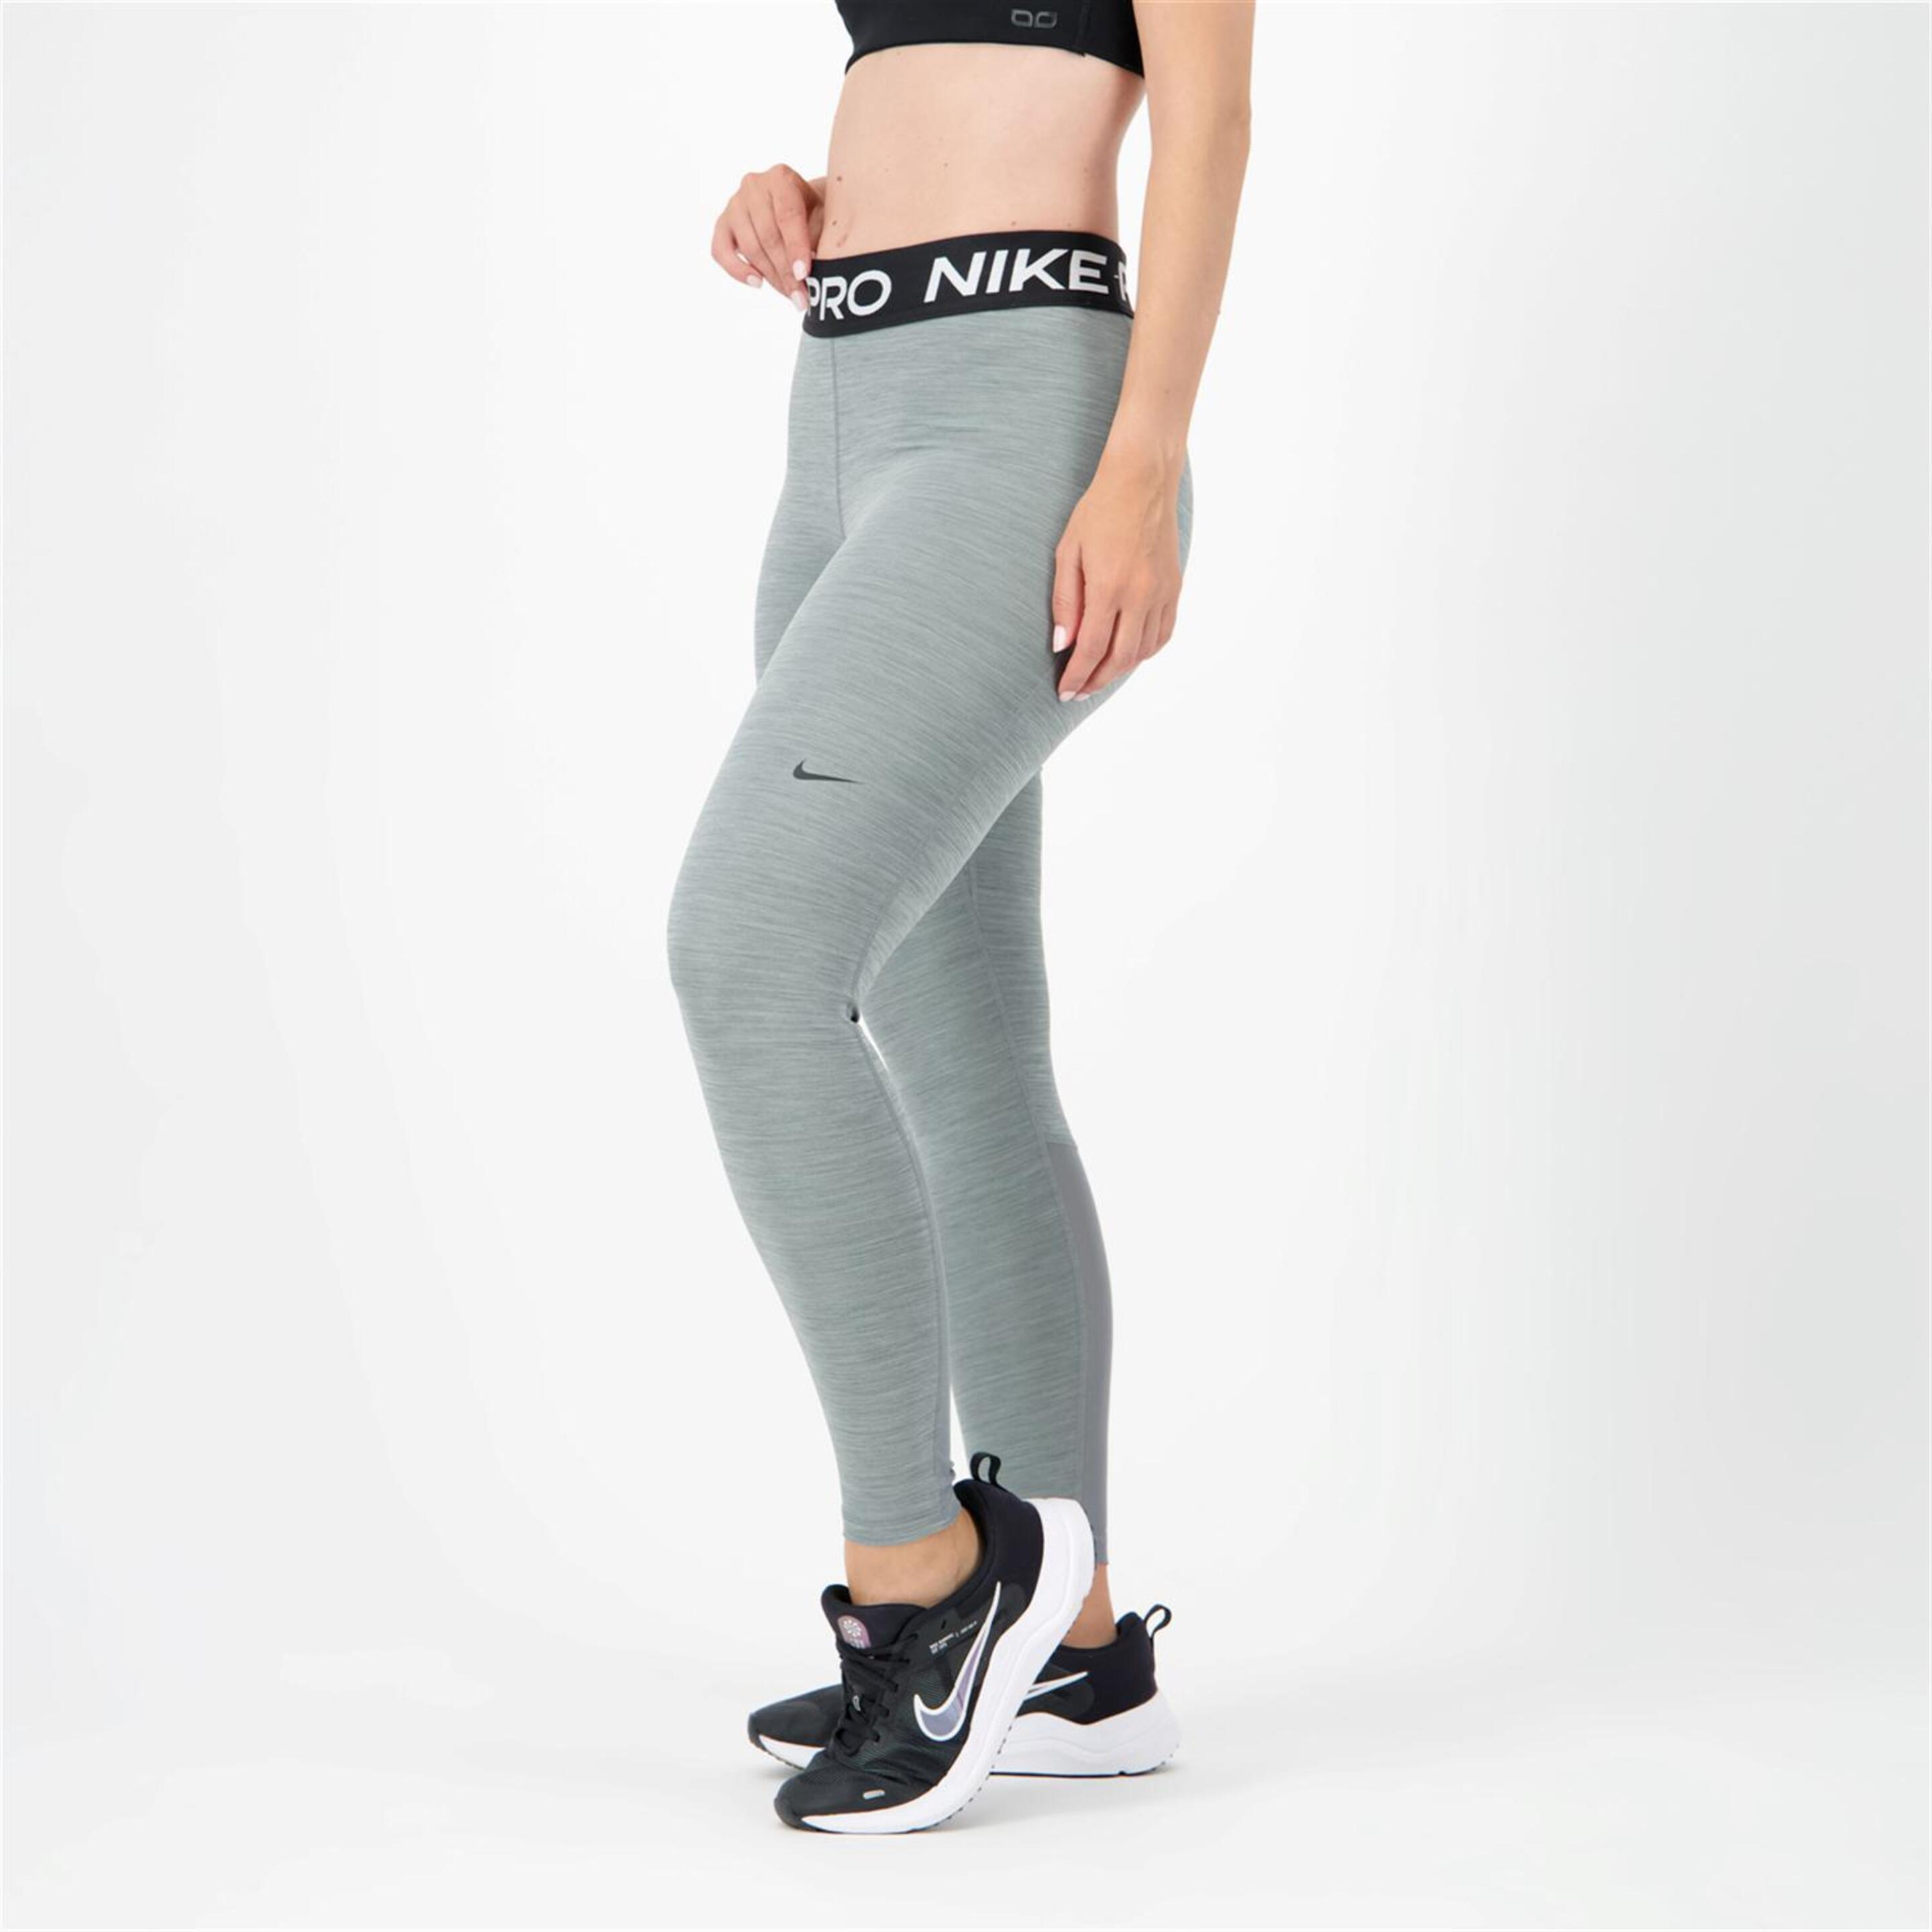 Nike Pro - gris - Mallas Transparencias Mujer